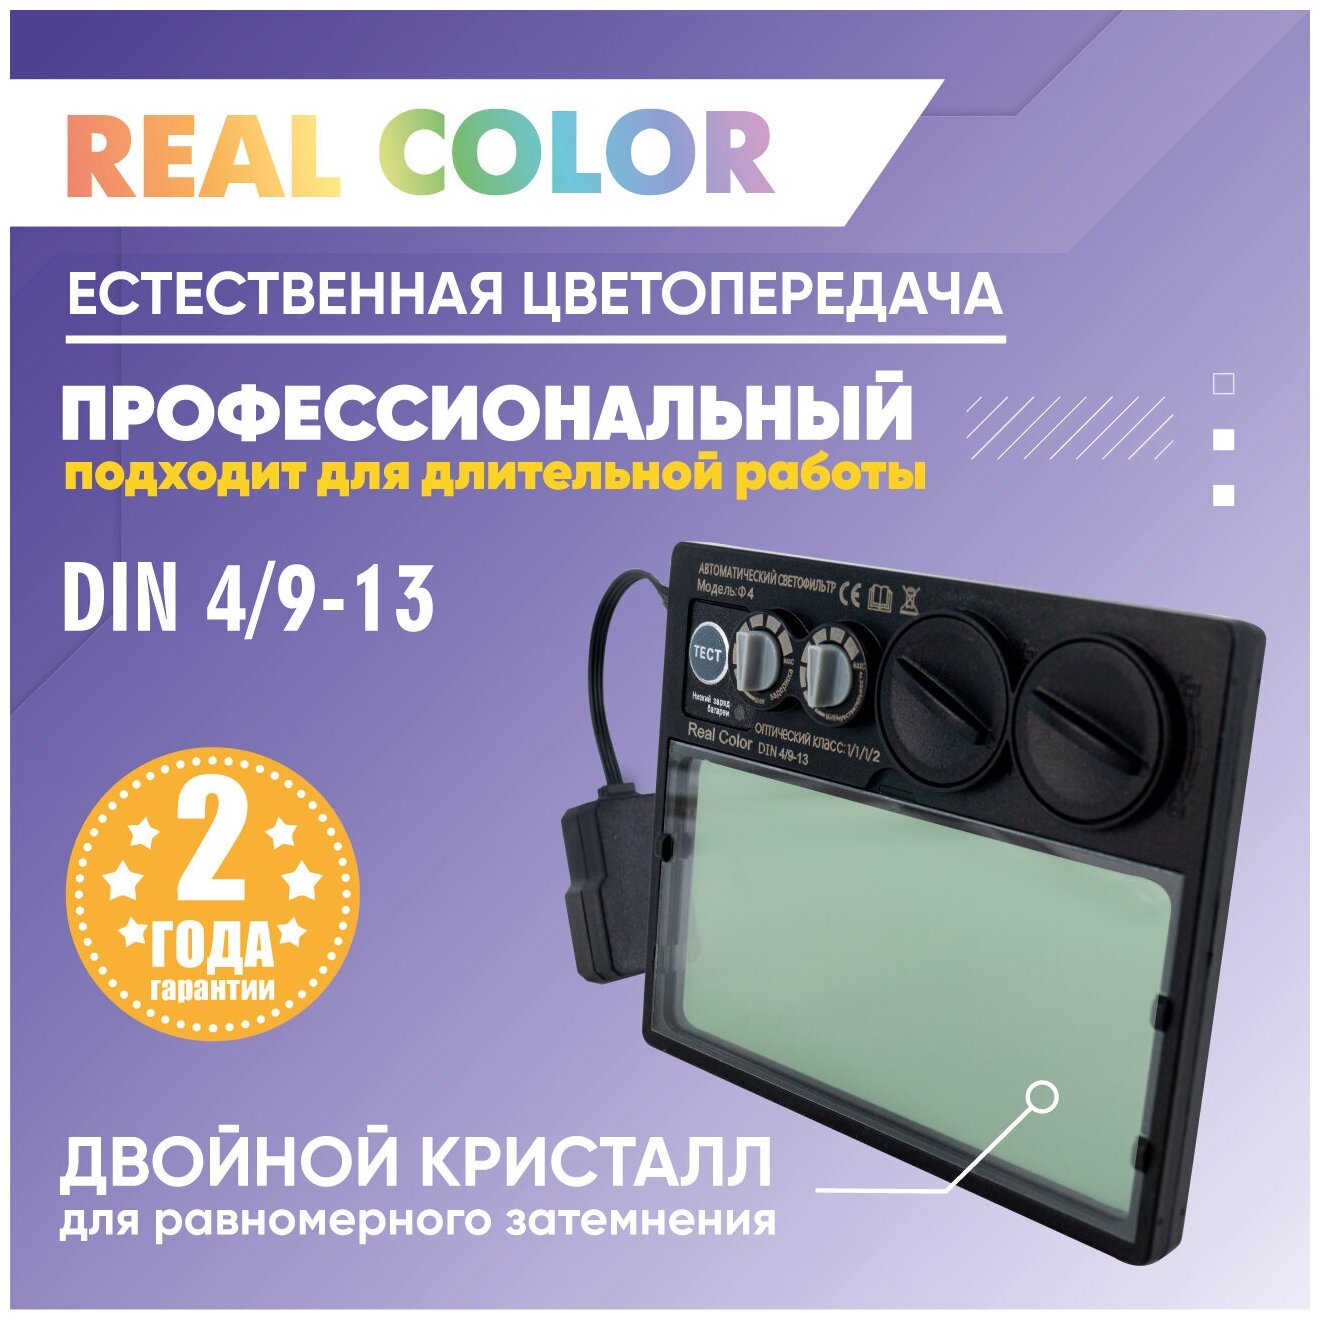 Светофильтр для сварочной маски Real Color SY105M Ф4 СЕТ DIN 4/9-13 с кнопкой самотестирования, плавная регулировка, хамелеон